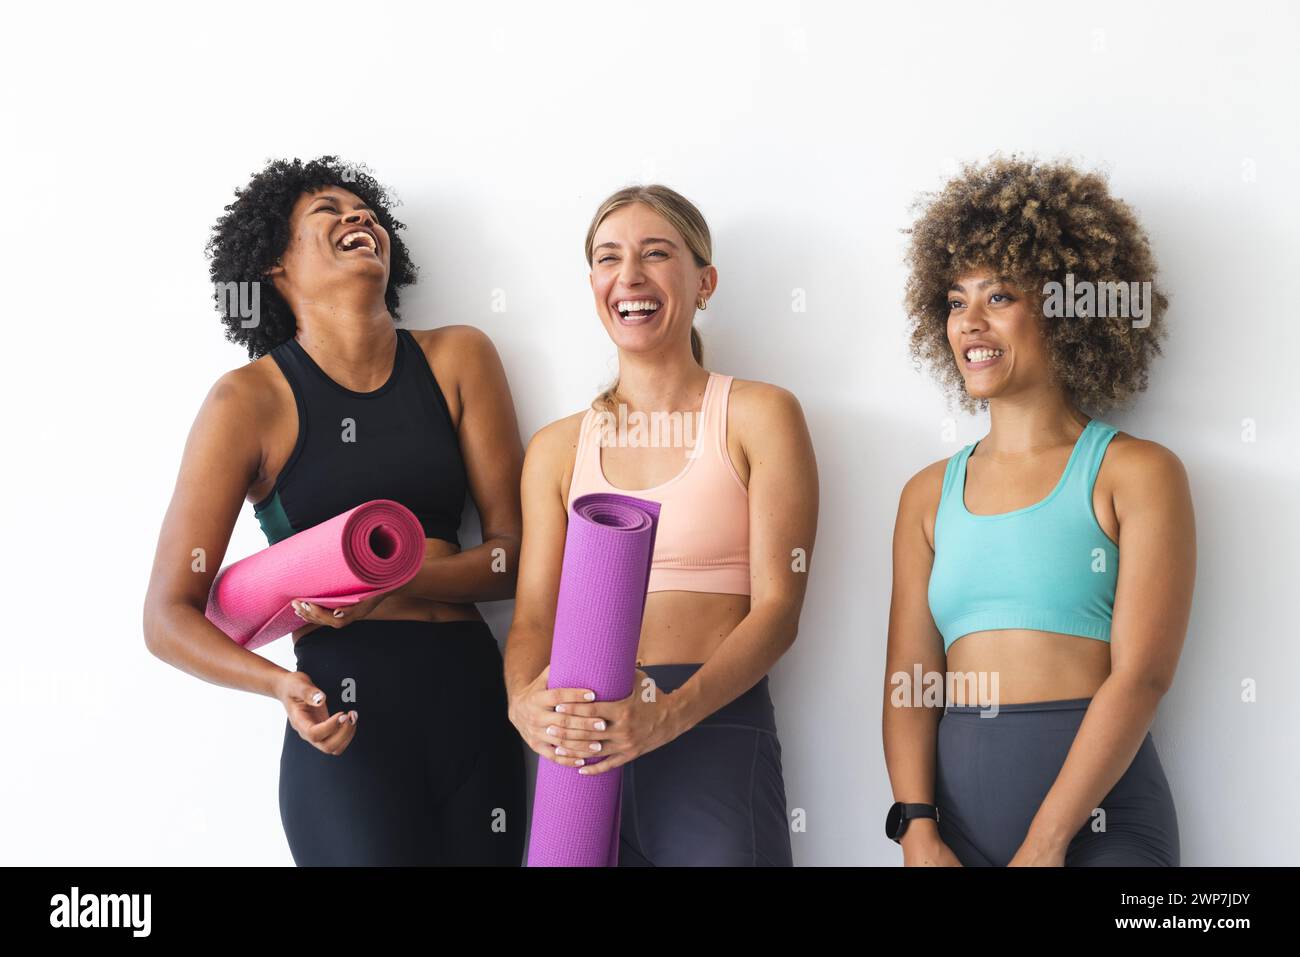 Un groupe diversifié de femmes partagent un rire après une séance d'entraînement Banque D'Images